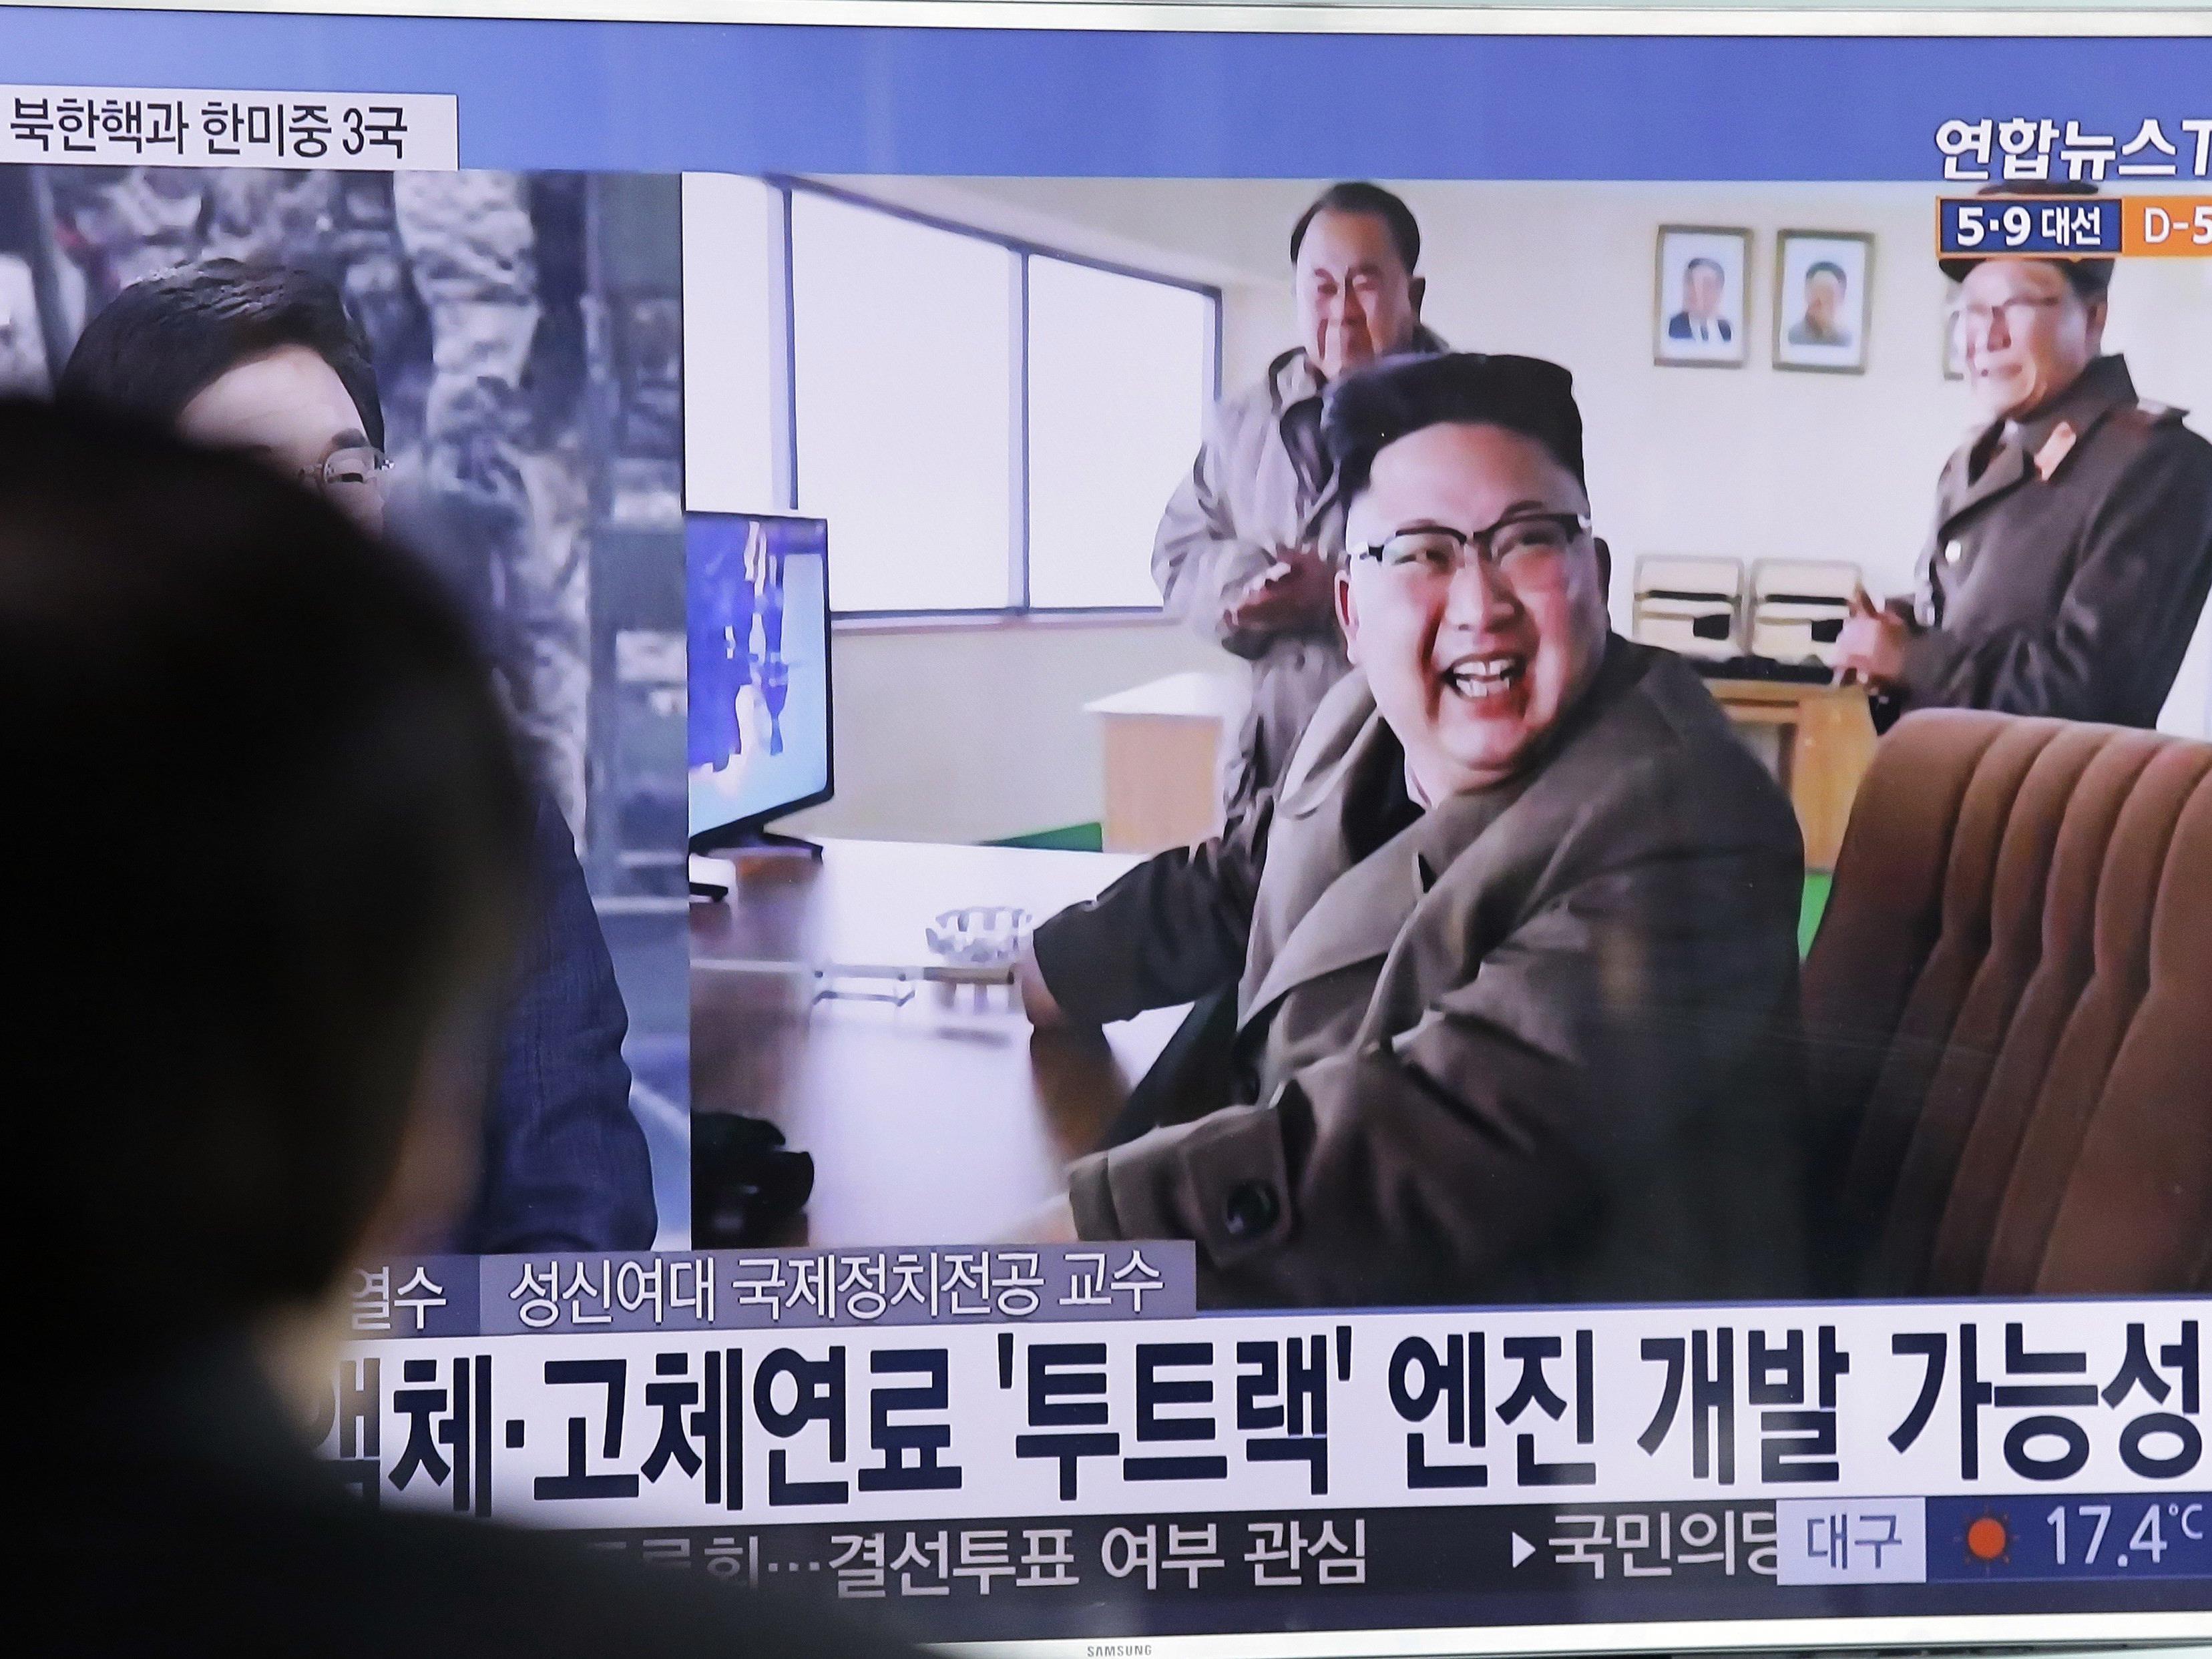 Wenn China und die USA sich streiten, könnte Kim Jong-Un der lachende Dritte sein.